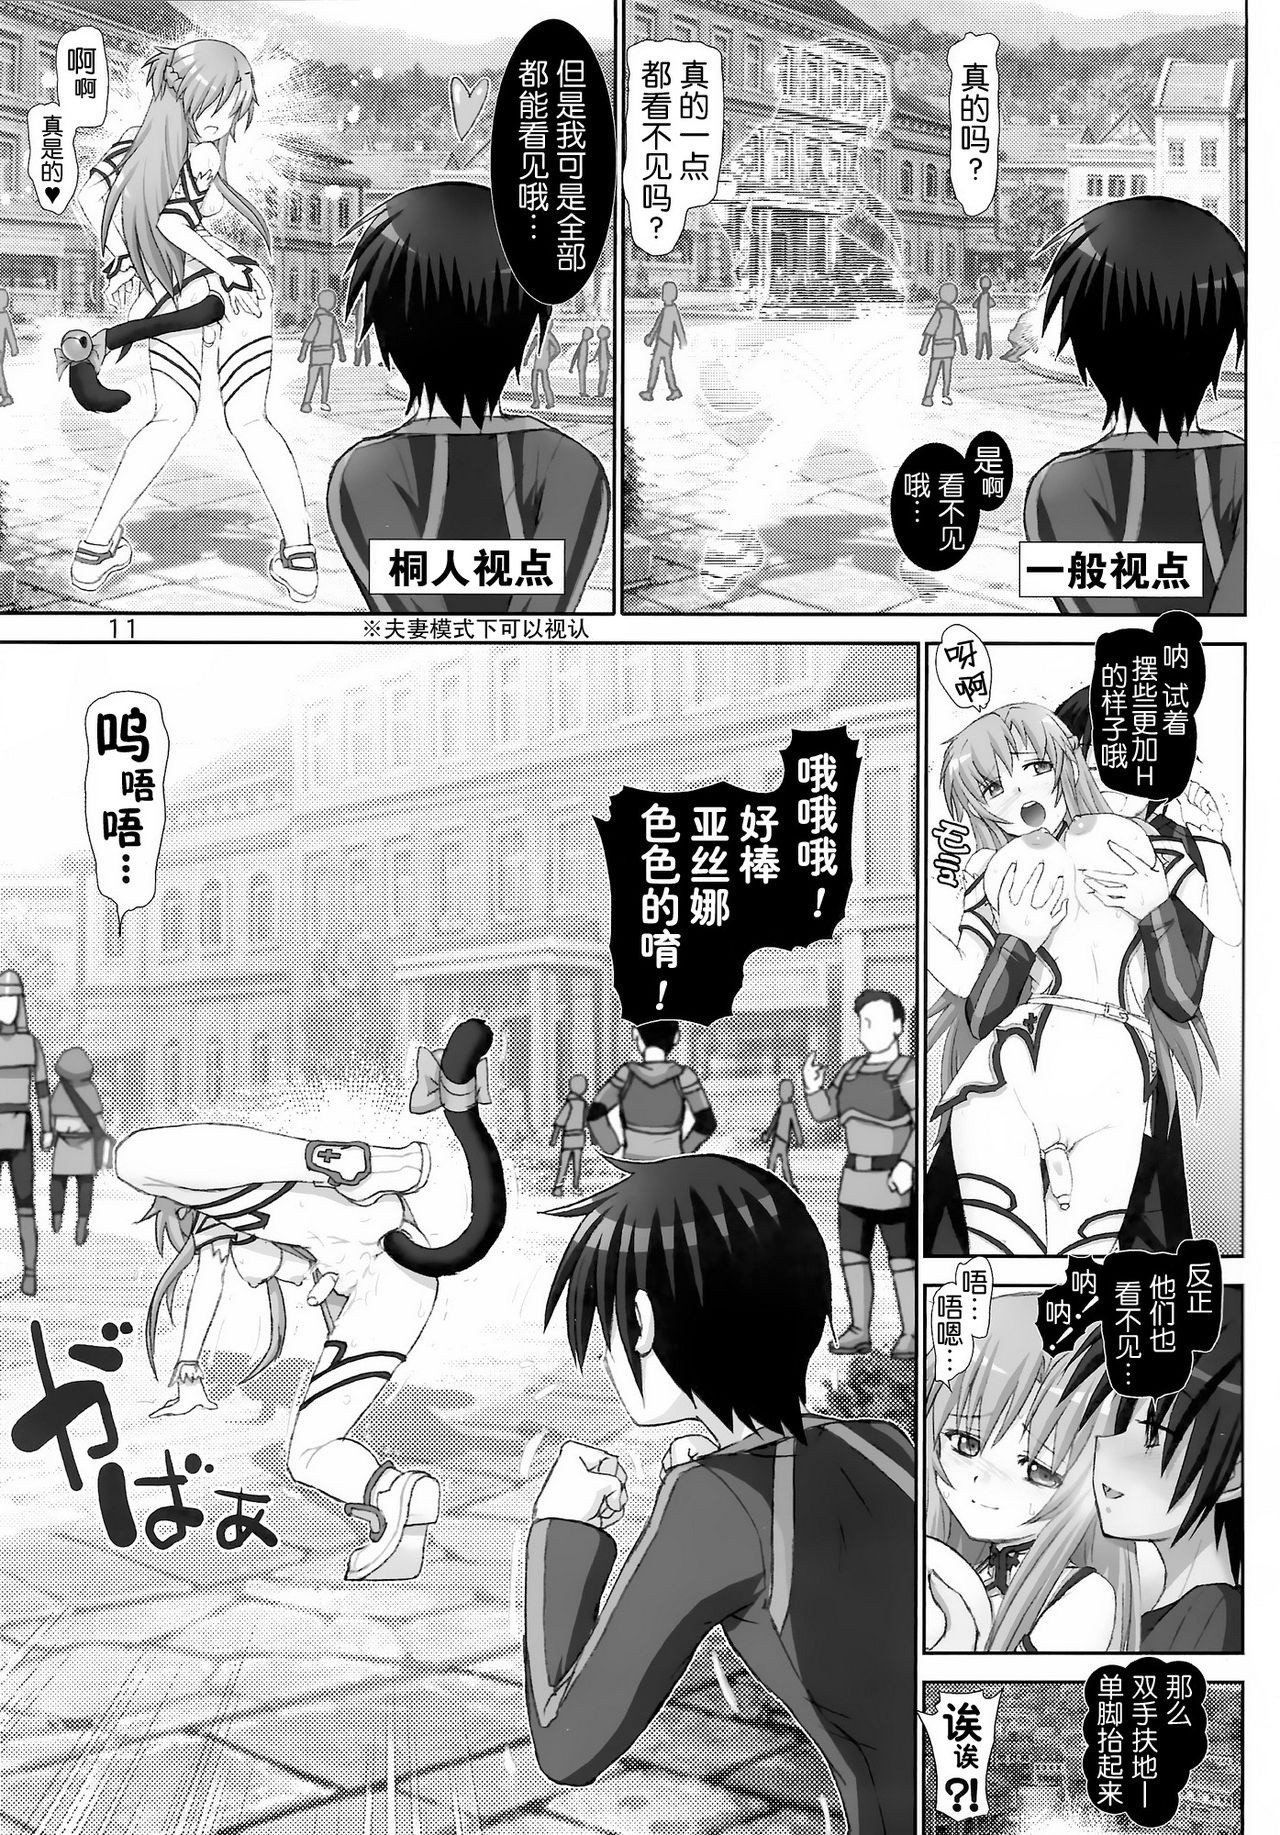 Sword Tsuma Asuna 2 hentai manga picture 10